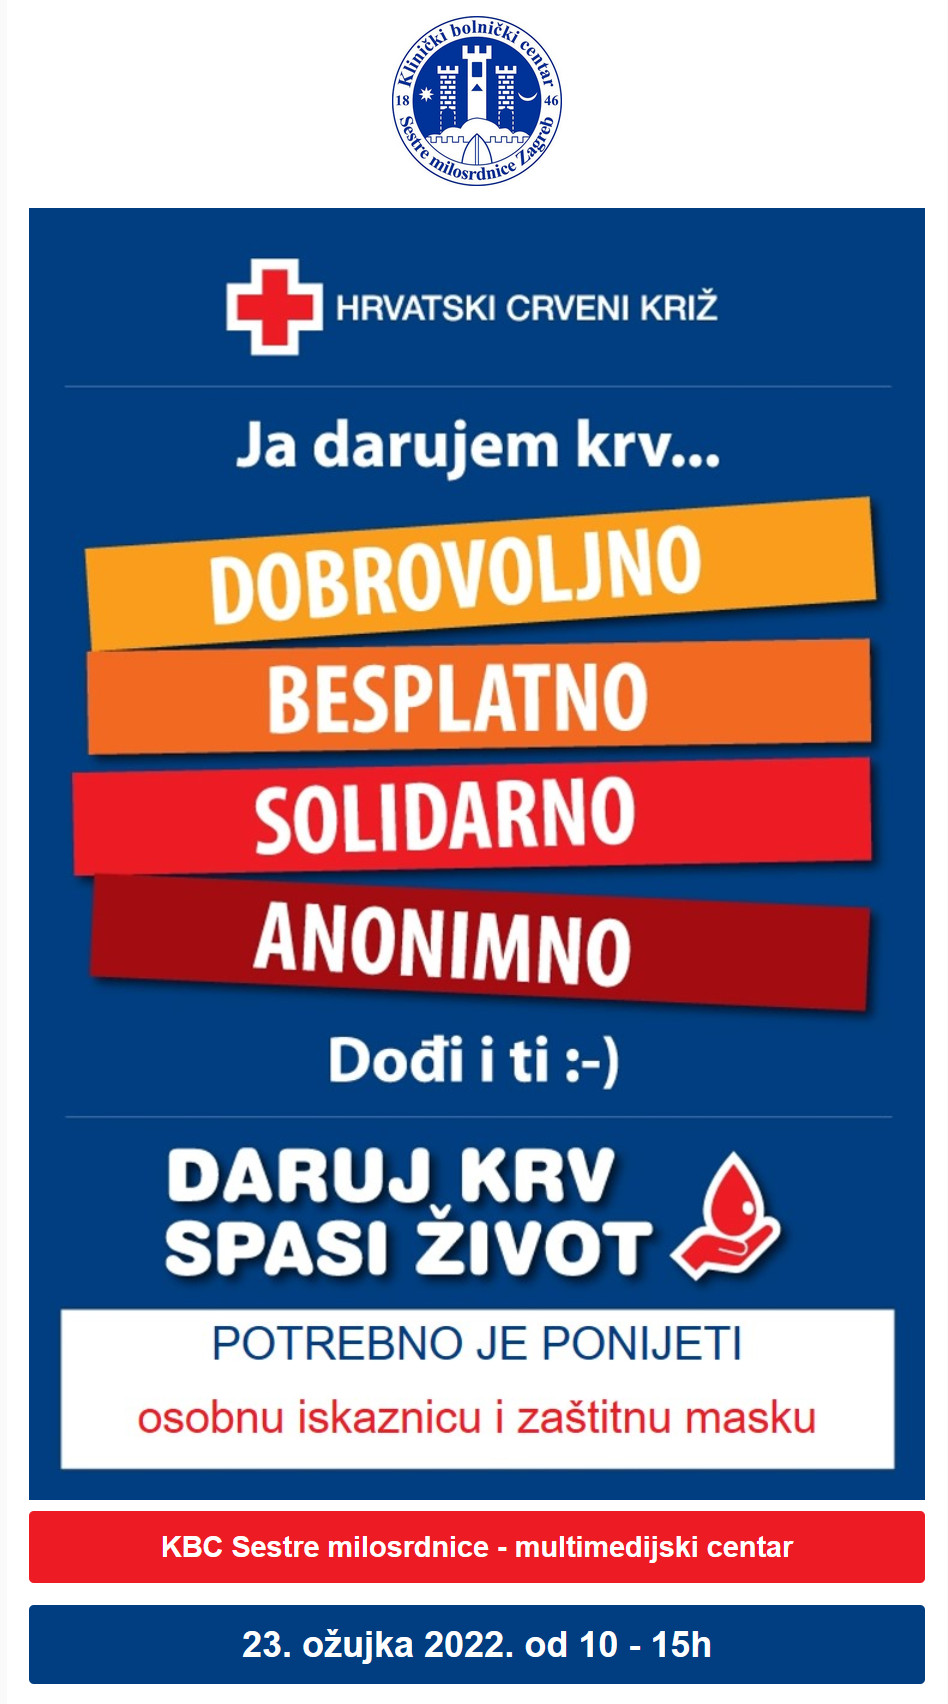 Hrvatski crveni križ - Ja darujem krv